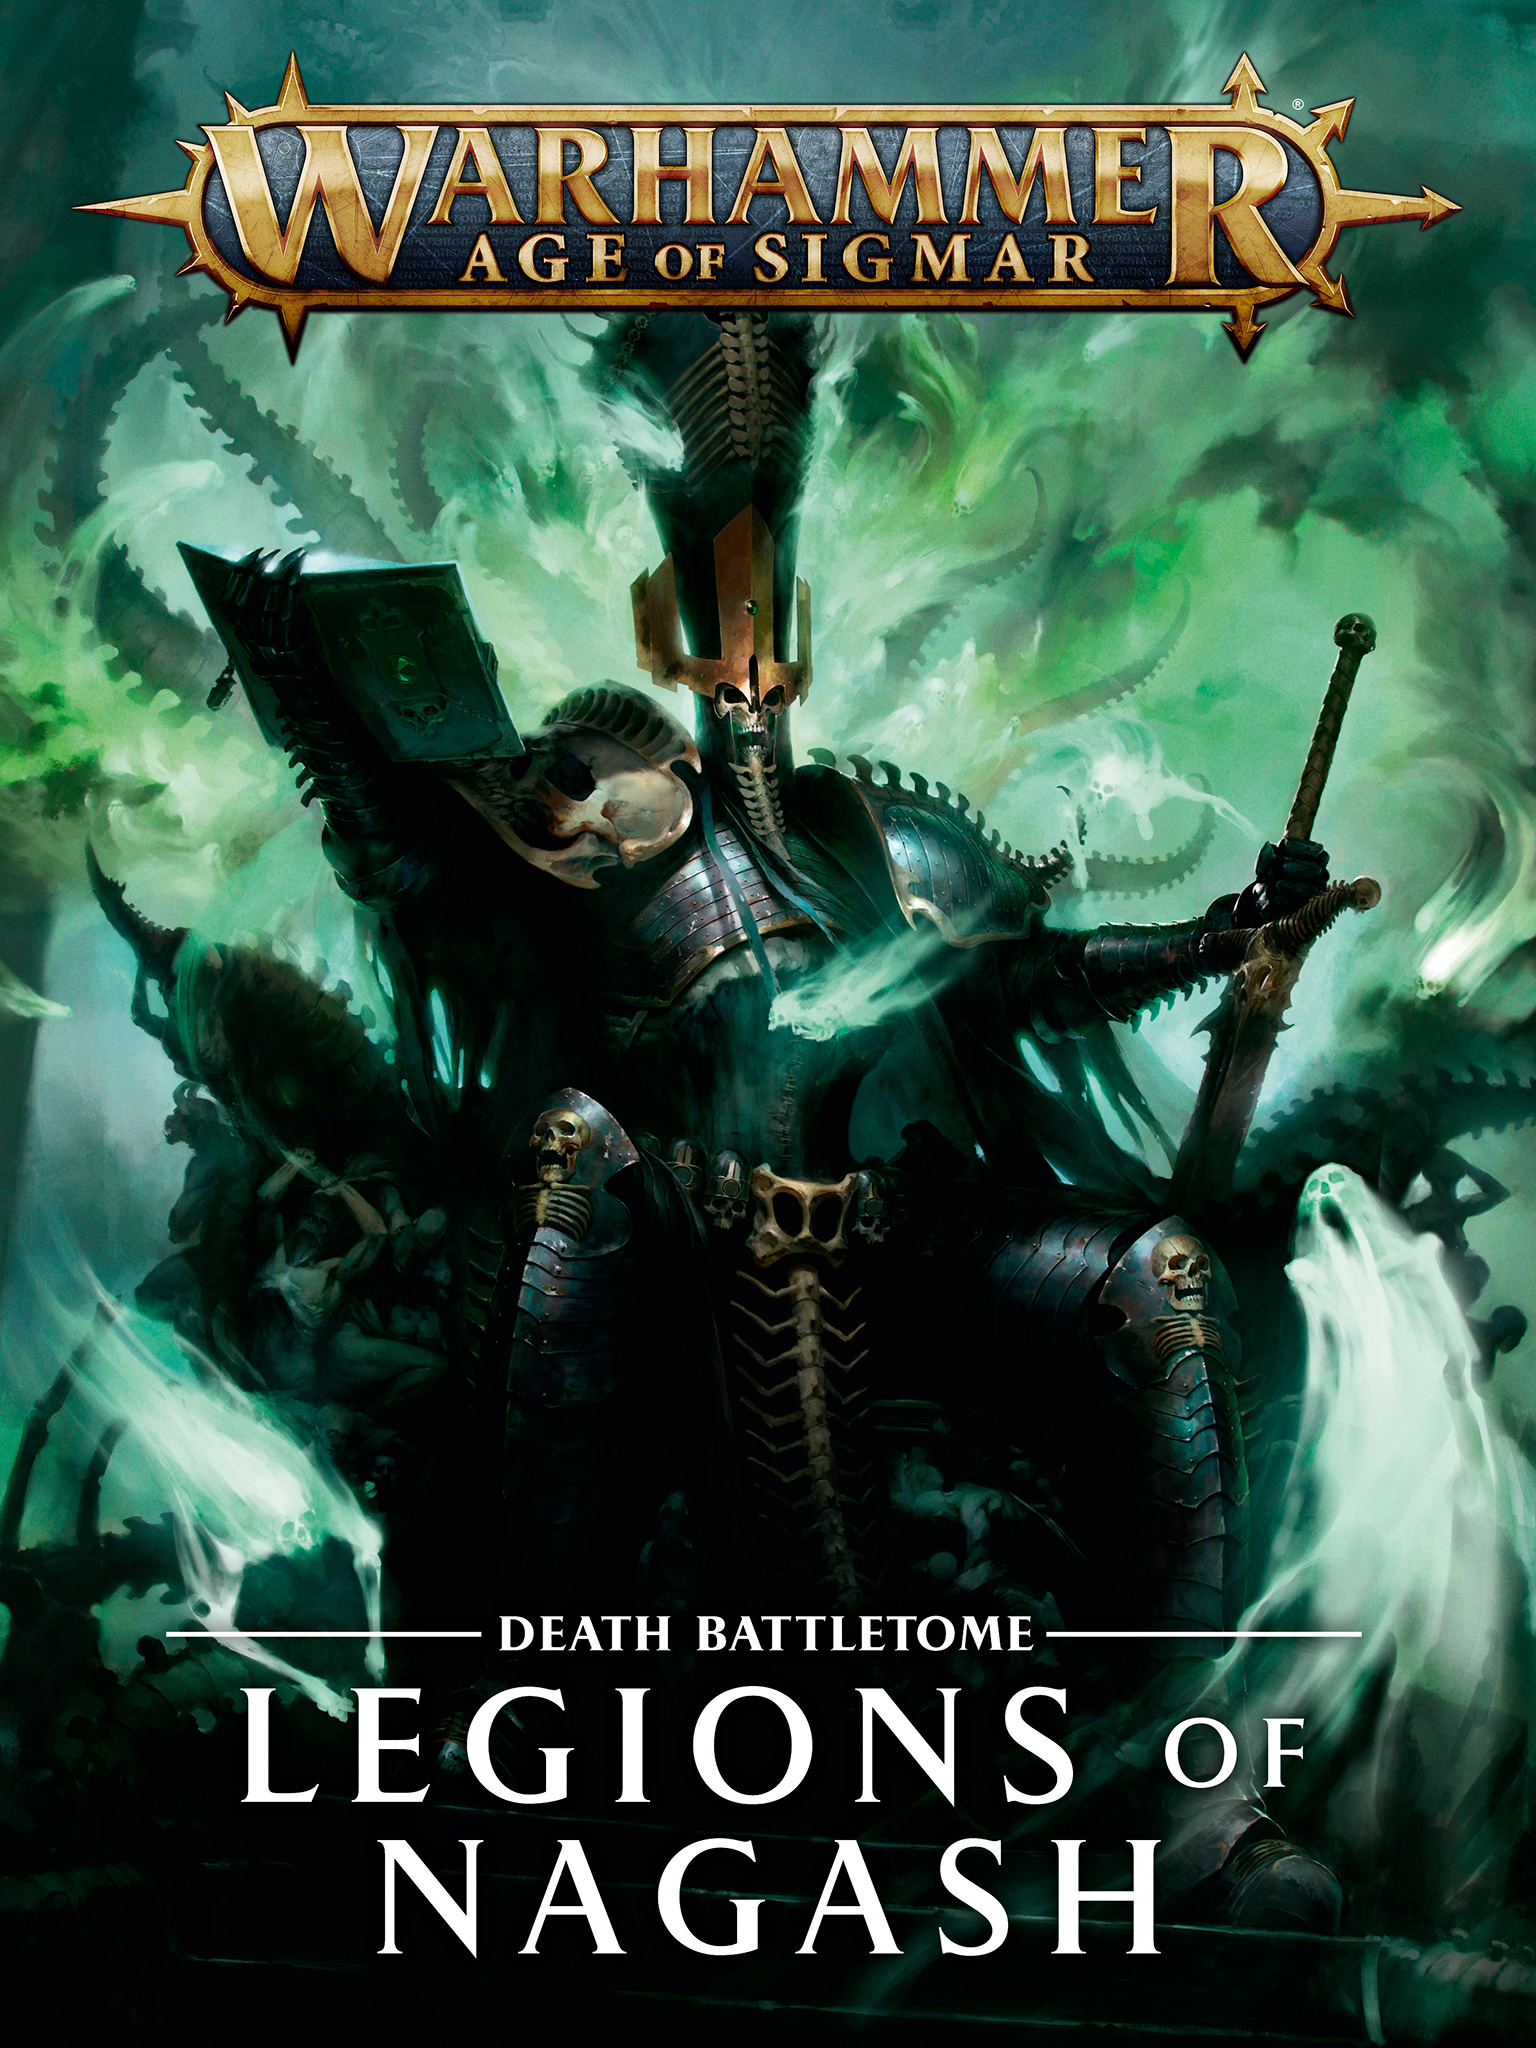 Death Battletome: Legions of Nagash